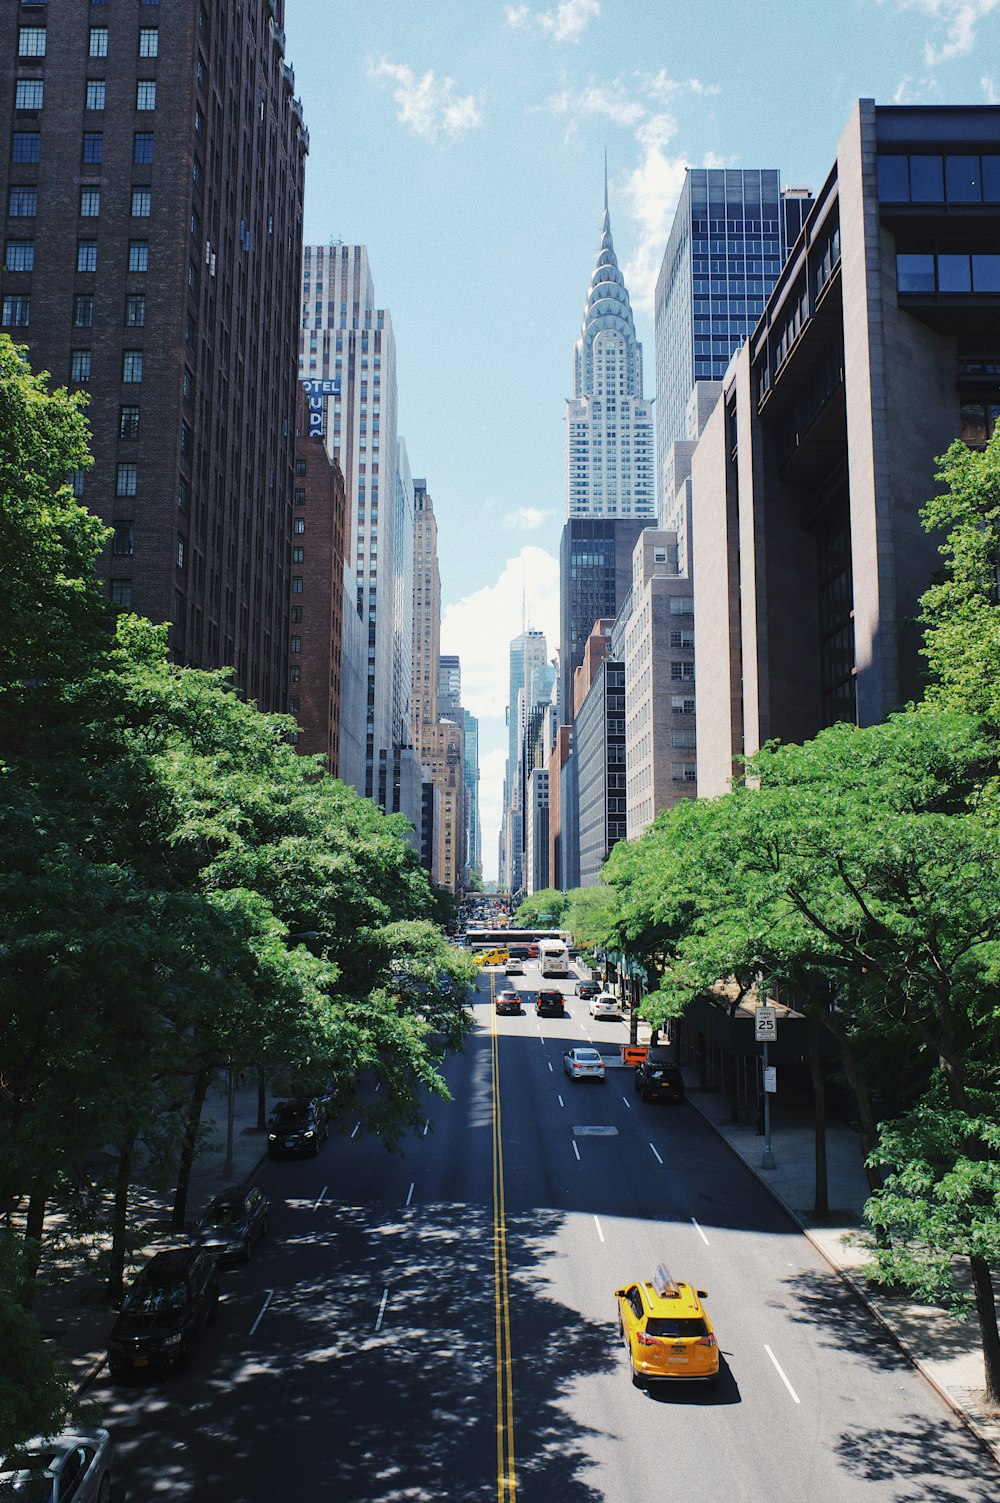 Fonds d'écran de la ville de New York: téléchargement HD gratuit [500+ HQ]  | Unsplash